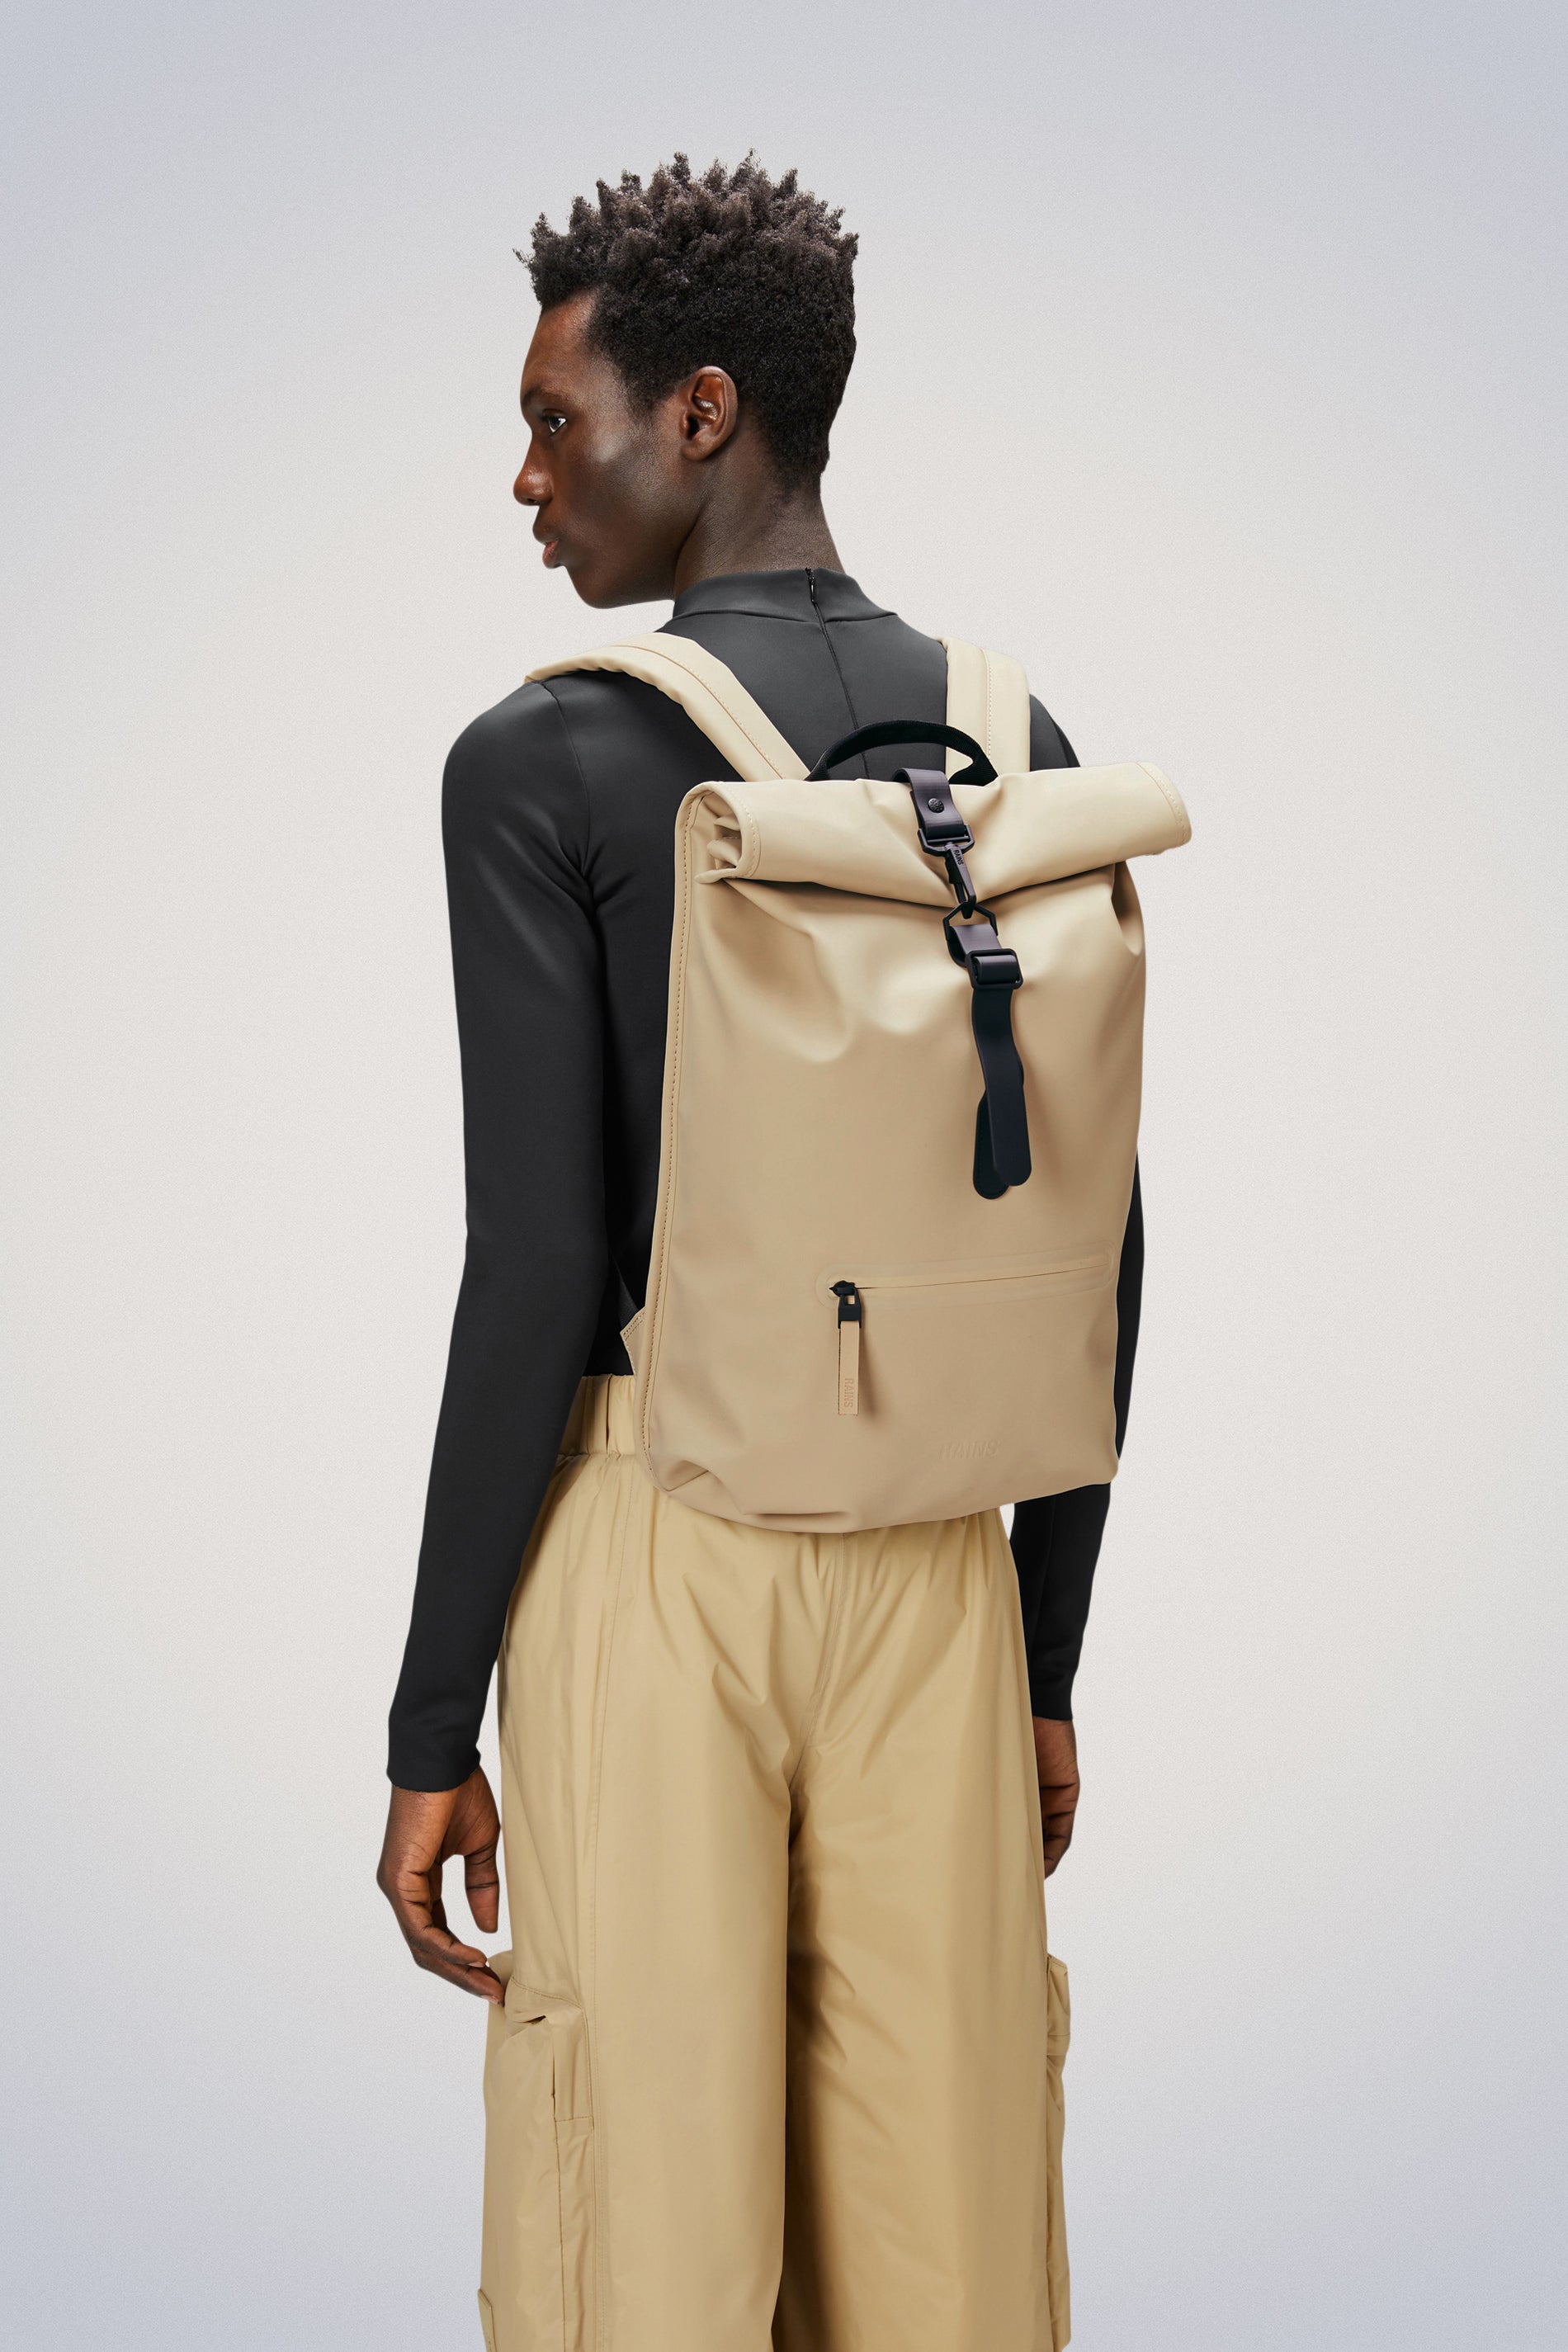 Waterproof Backpack | Buy Waterproof Rucksack | Free Shipping